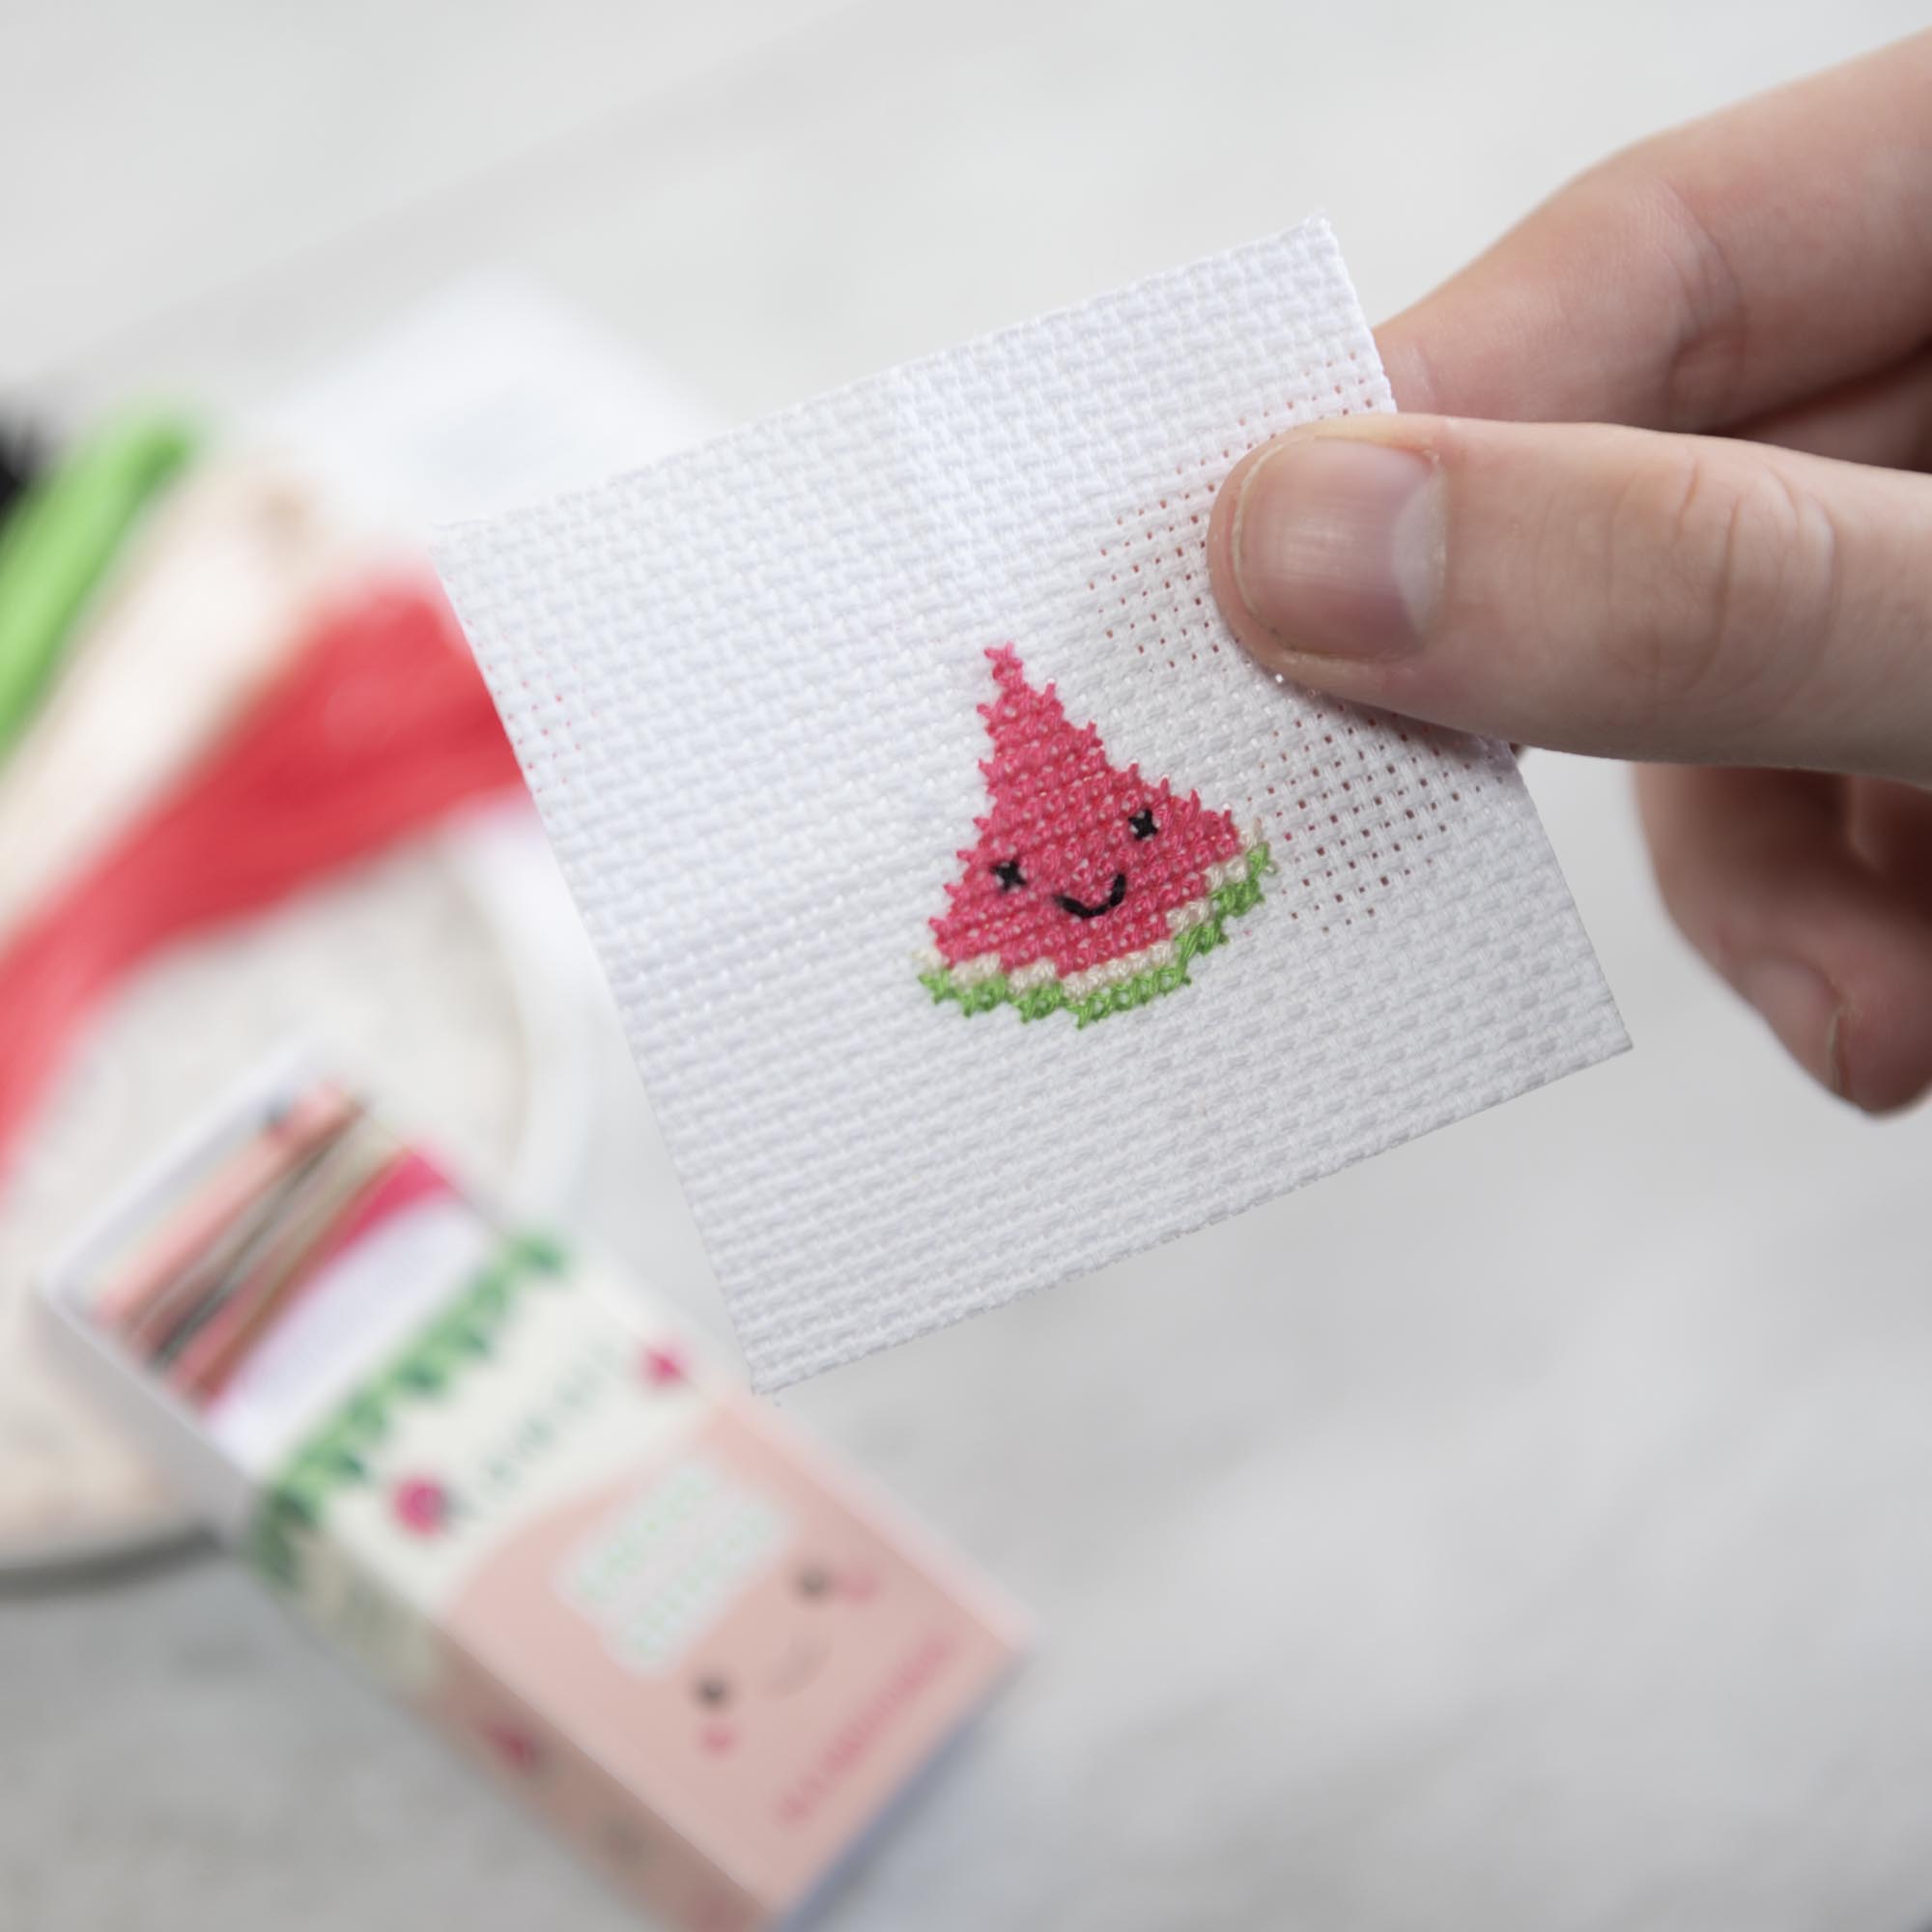 Mini Cross Stitch Kit With Kawaii Watermelon In A Matchbox